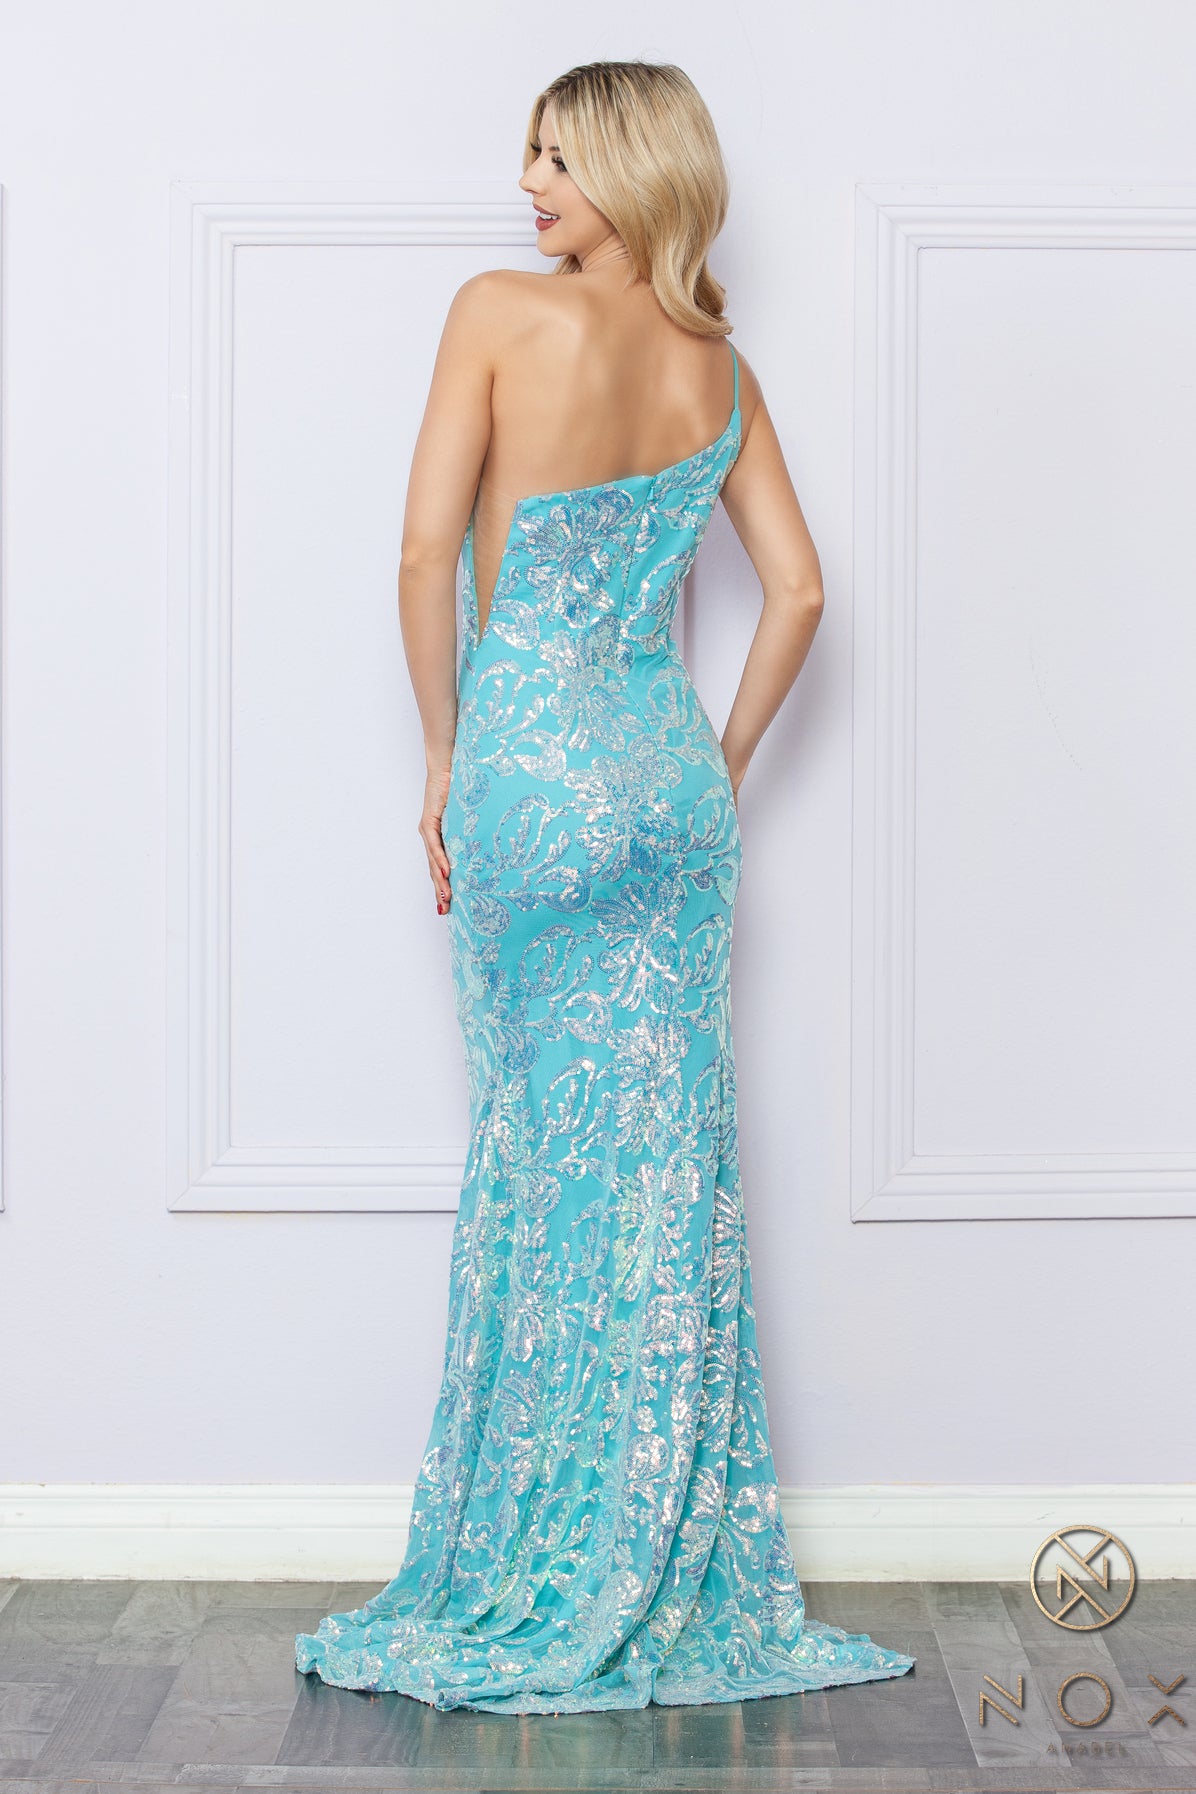 Nox Anabel –R1308 One Shoulder Floral Sequin Dress